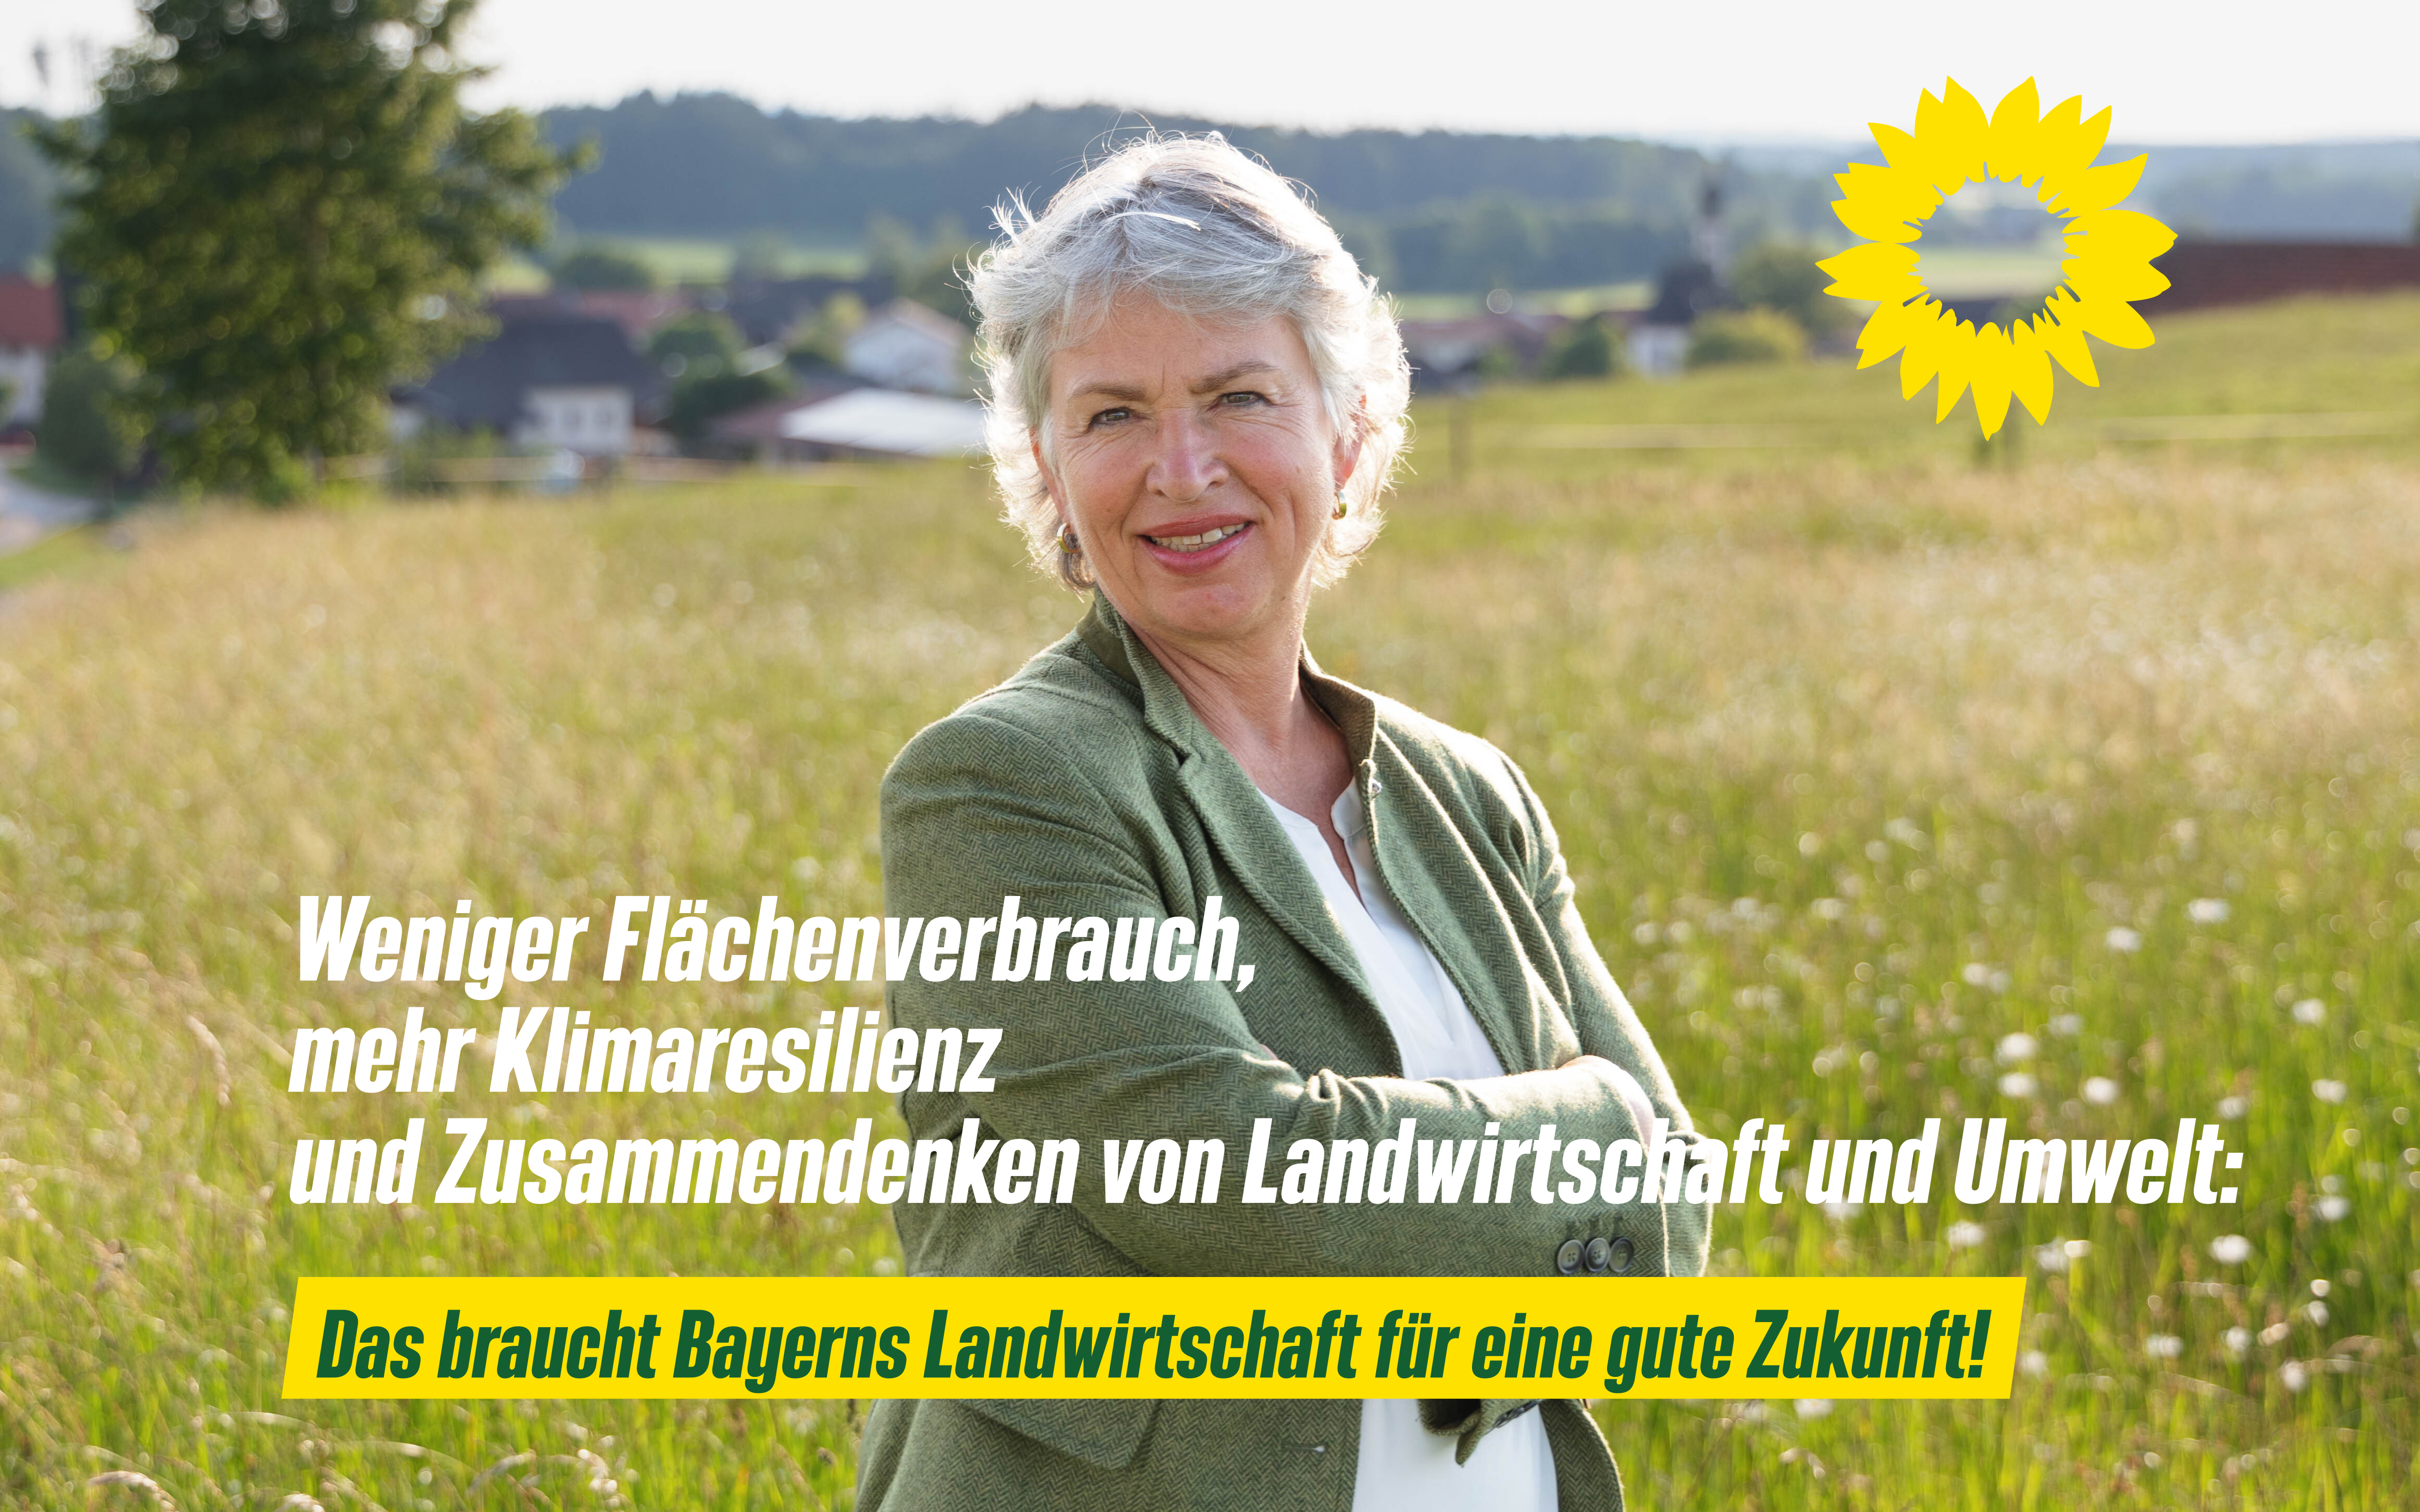 Bayerische Landwirtschaft mit Zukunft!